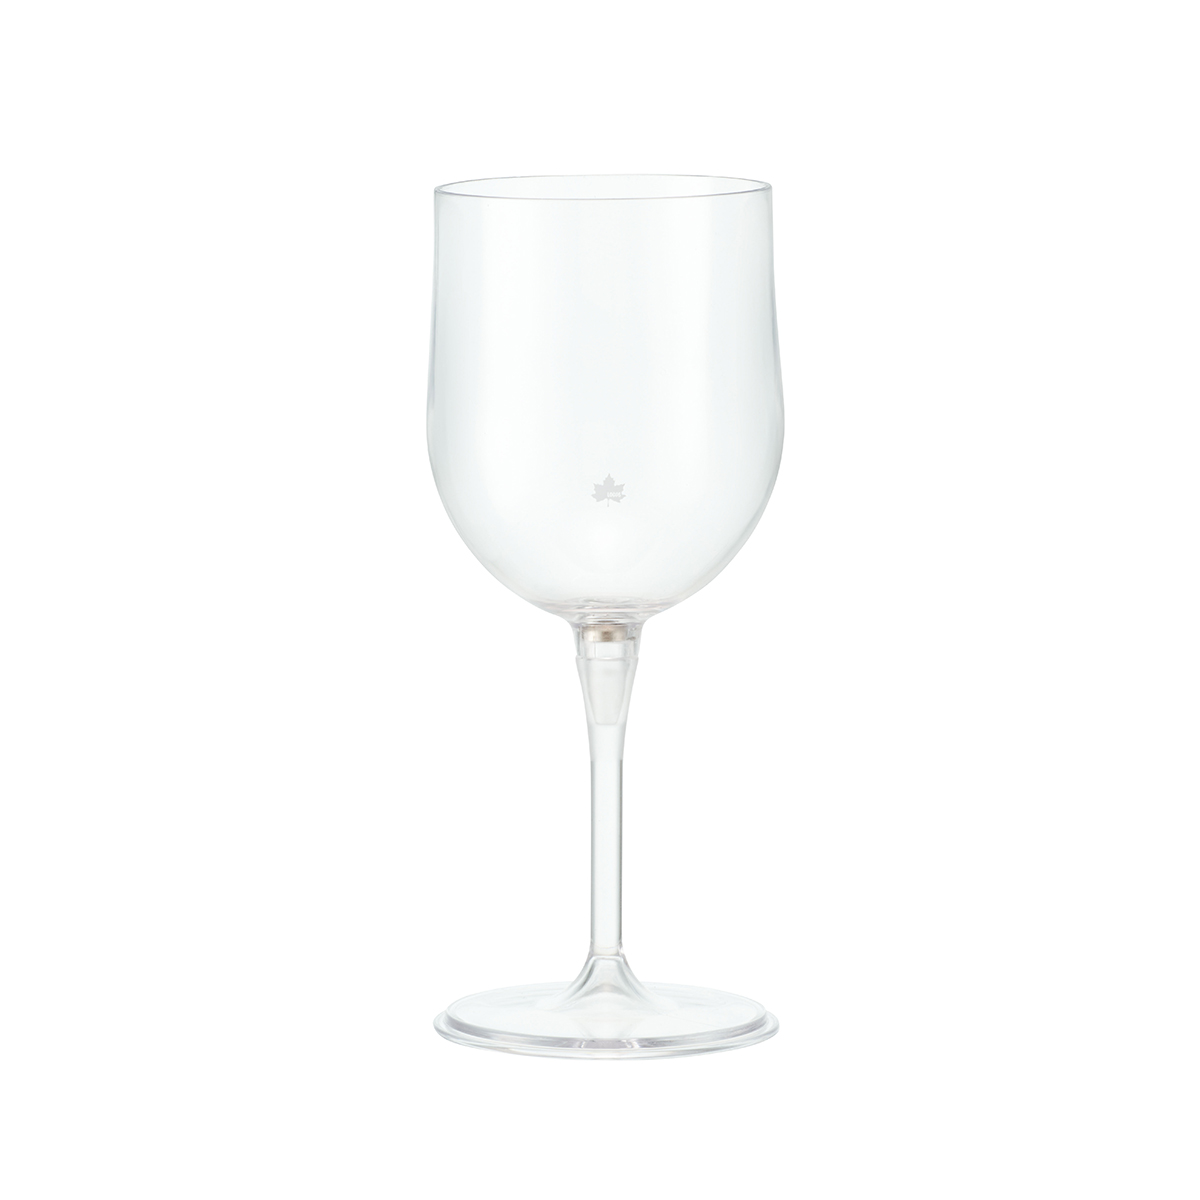 割れないワイングラス With ポータブルケース ギア キッチンツール コップ 製品情報 ロゴスショップ公式オンライン